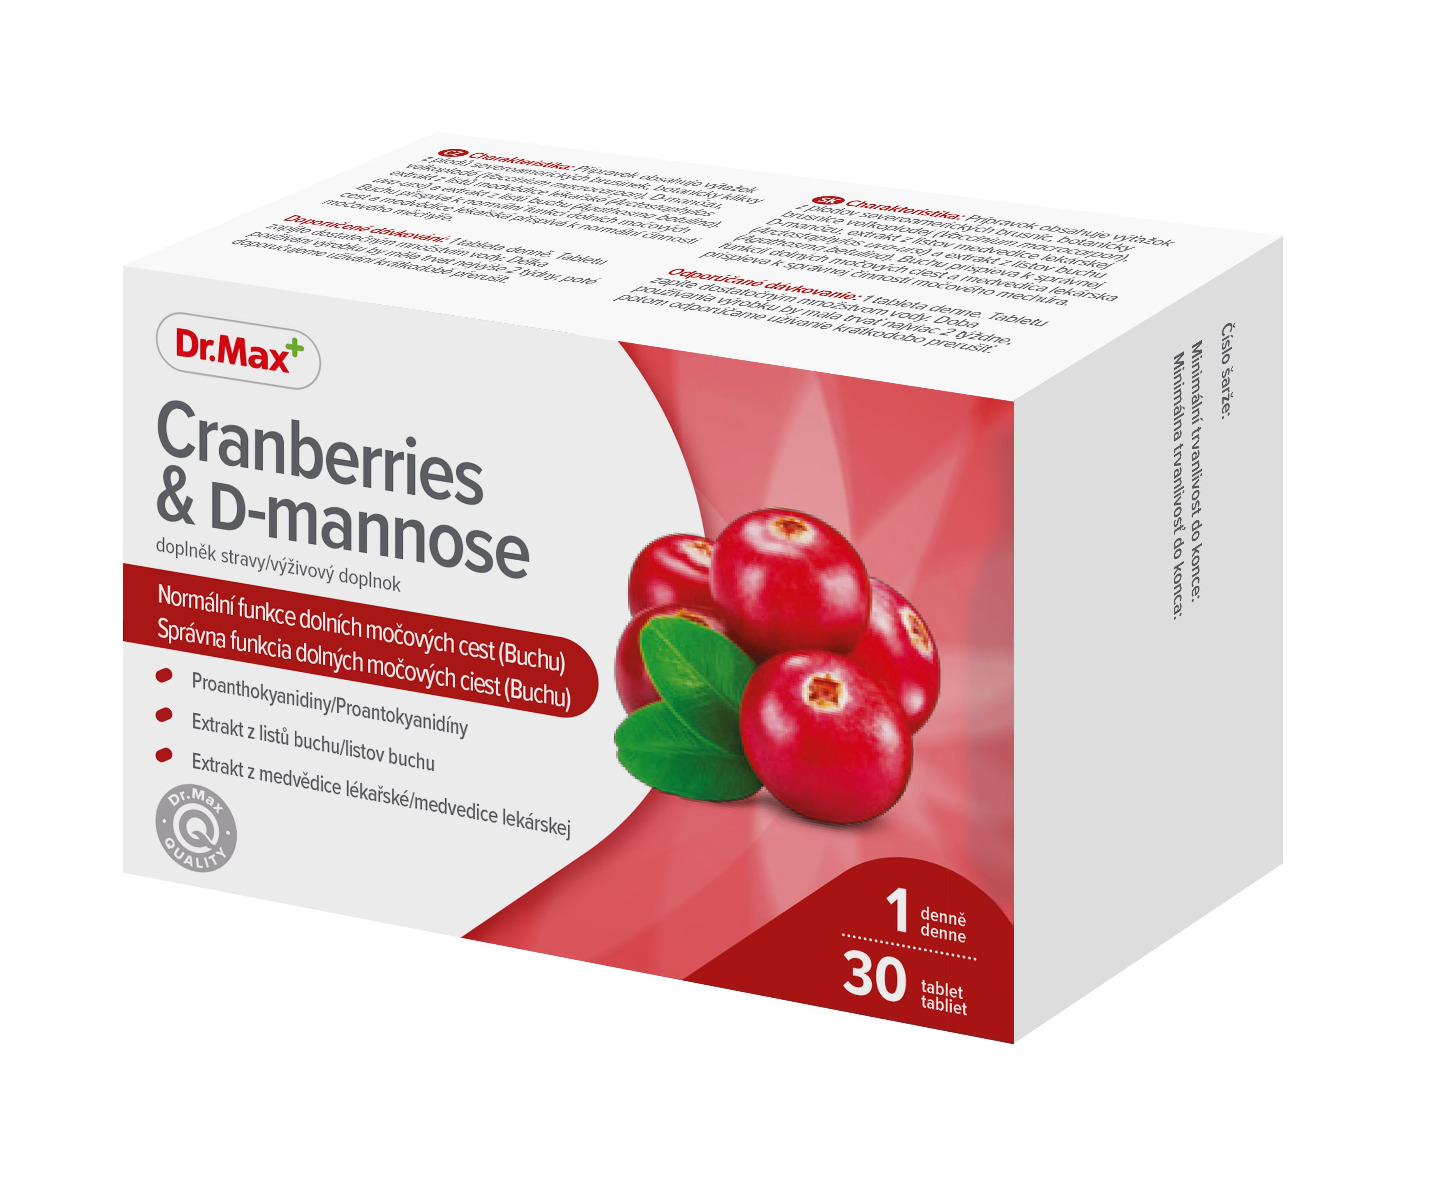 Dr.Max Cranberries & D-mannose 30 tablet Dr.Max